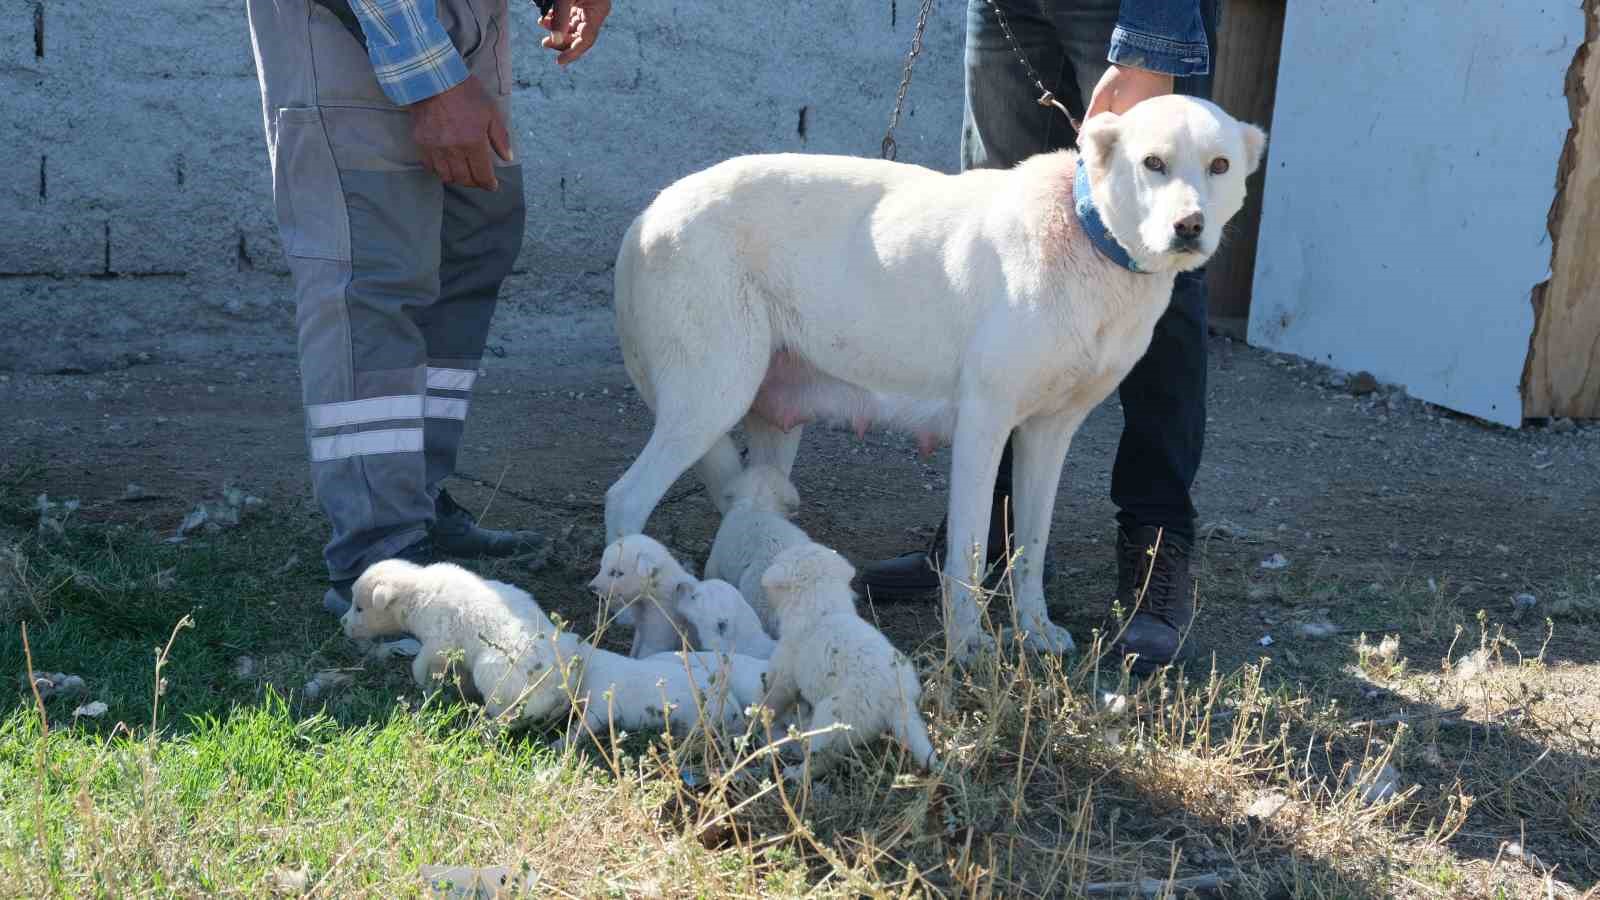 (ÖZEL) Annesiz kalan yavruları başka bir Akbaş cinsi köpek sahiplendi